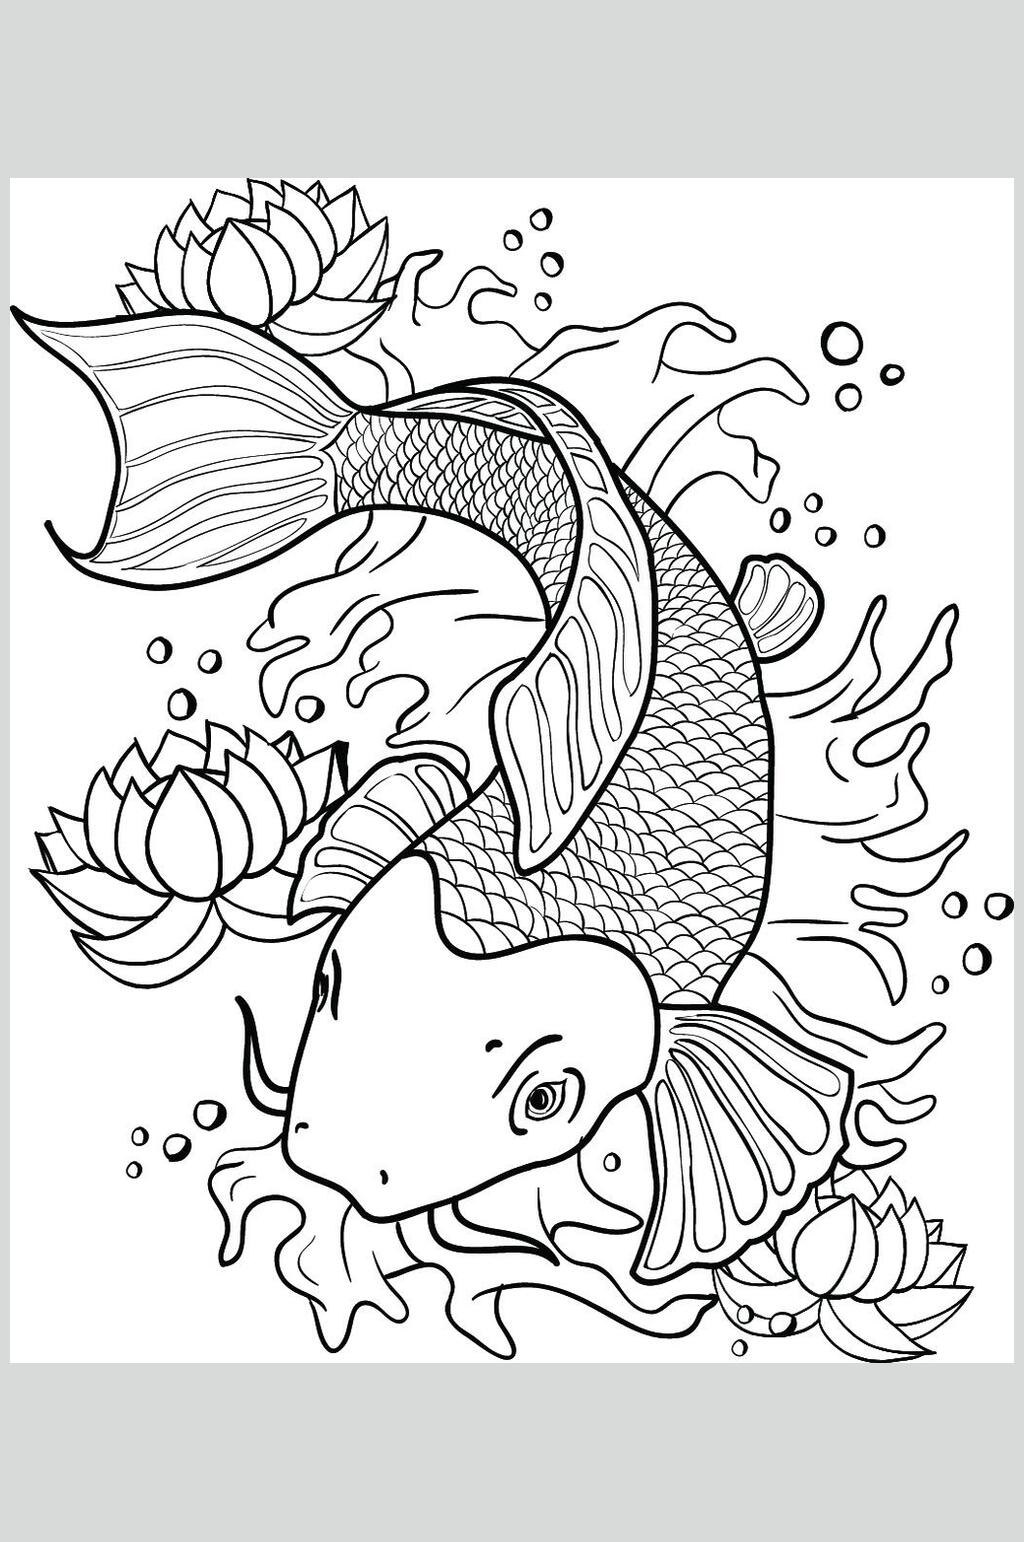 线描画鱼复杂图片